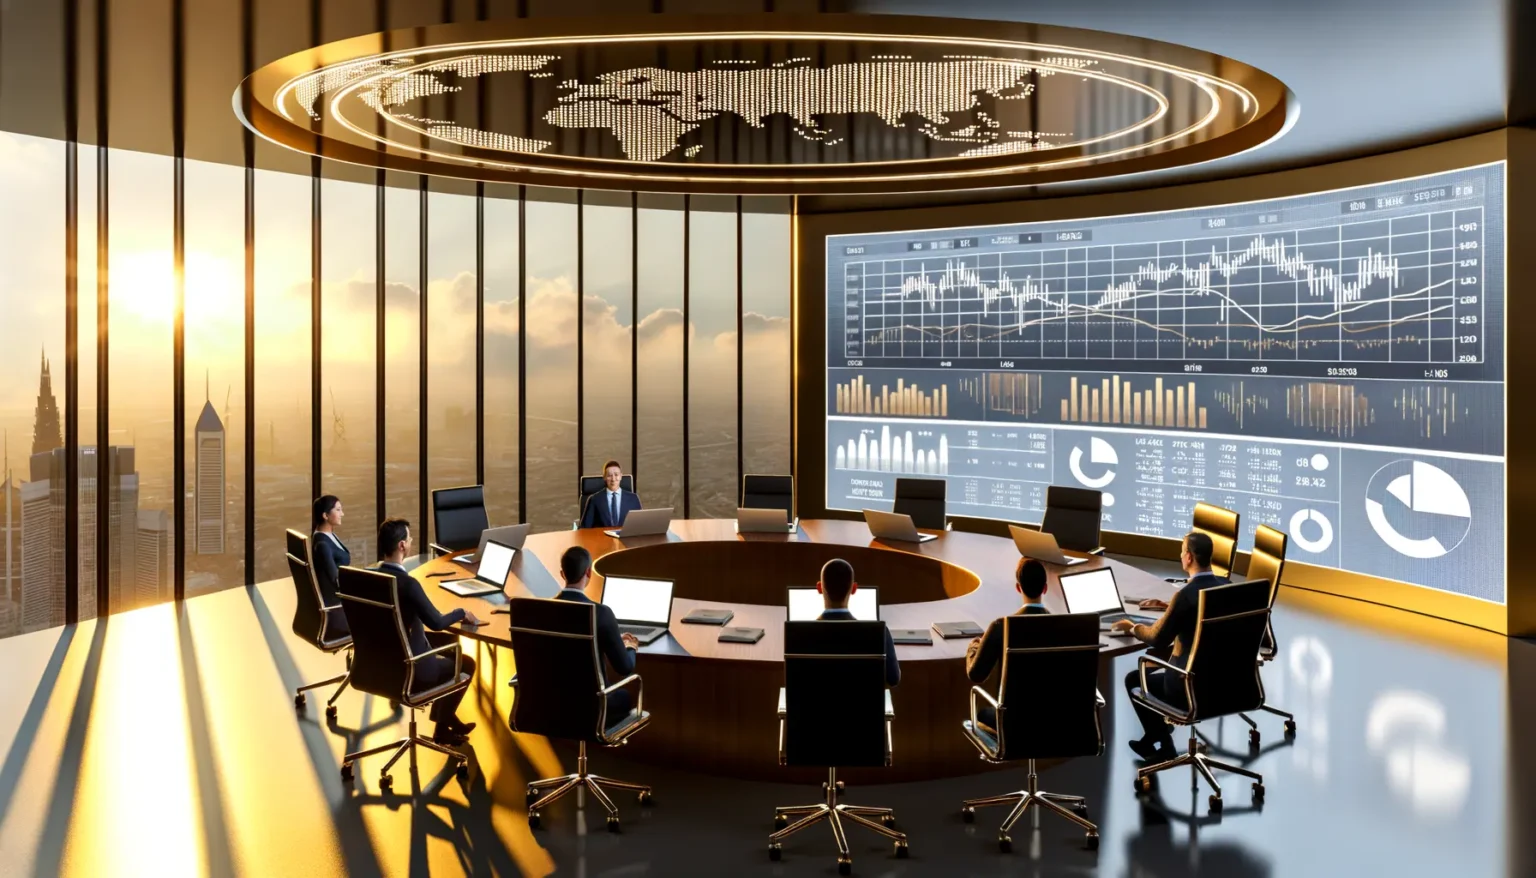 Eine Gruppe von Menschen in einem modernen Konferenzraum mit Panoramablick auf eine Stadt bei Sonnenuntergang. Sie sitzen um einen ovalen Tisch mit Laptops und Unterlagen, während große Bildschirme an der Wand Finanzdaten und Weltkarten anzeigen.